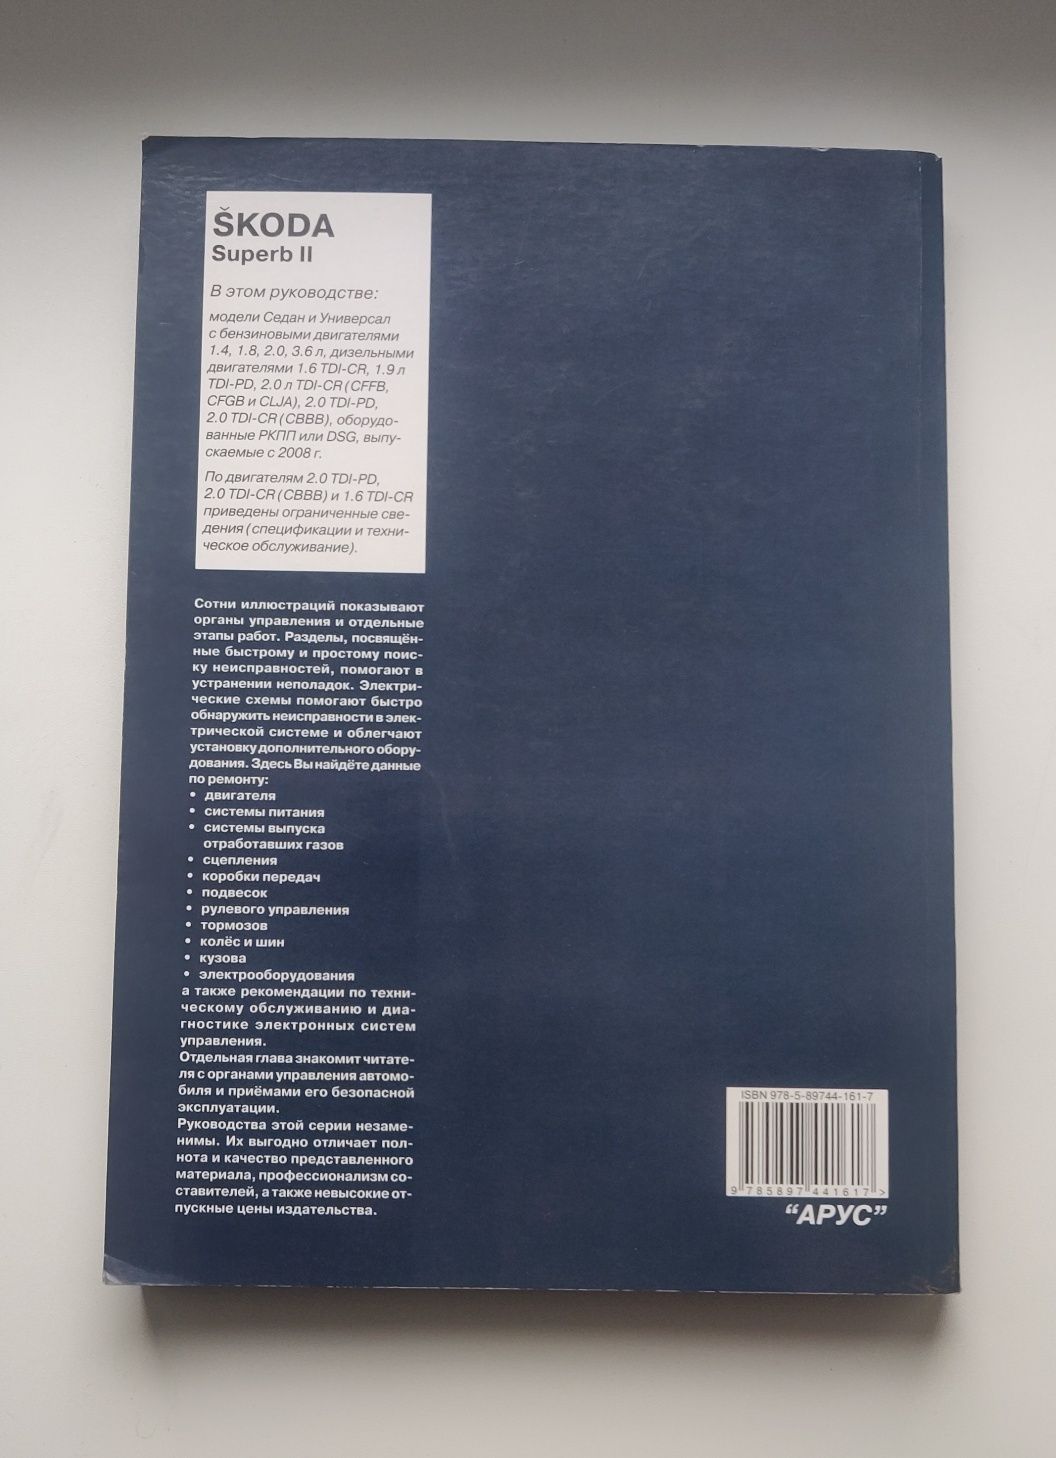 Книга: Skoda Superb II. Керівництво по ремонту та експлуатації.
Деталь